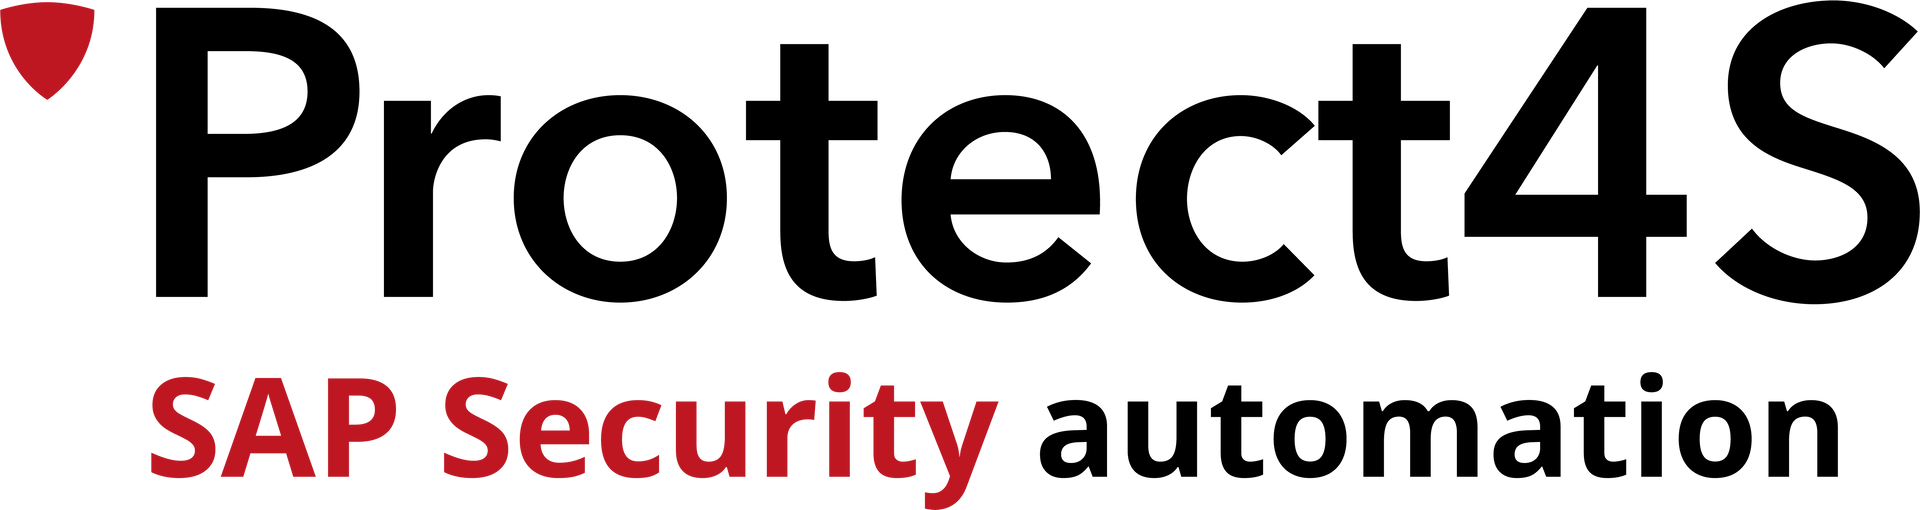 SafeHarbour logo